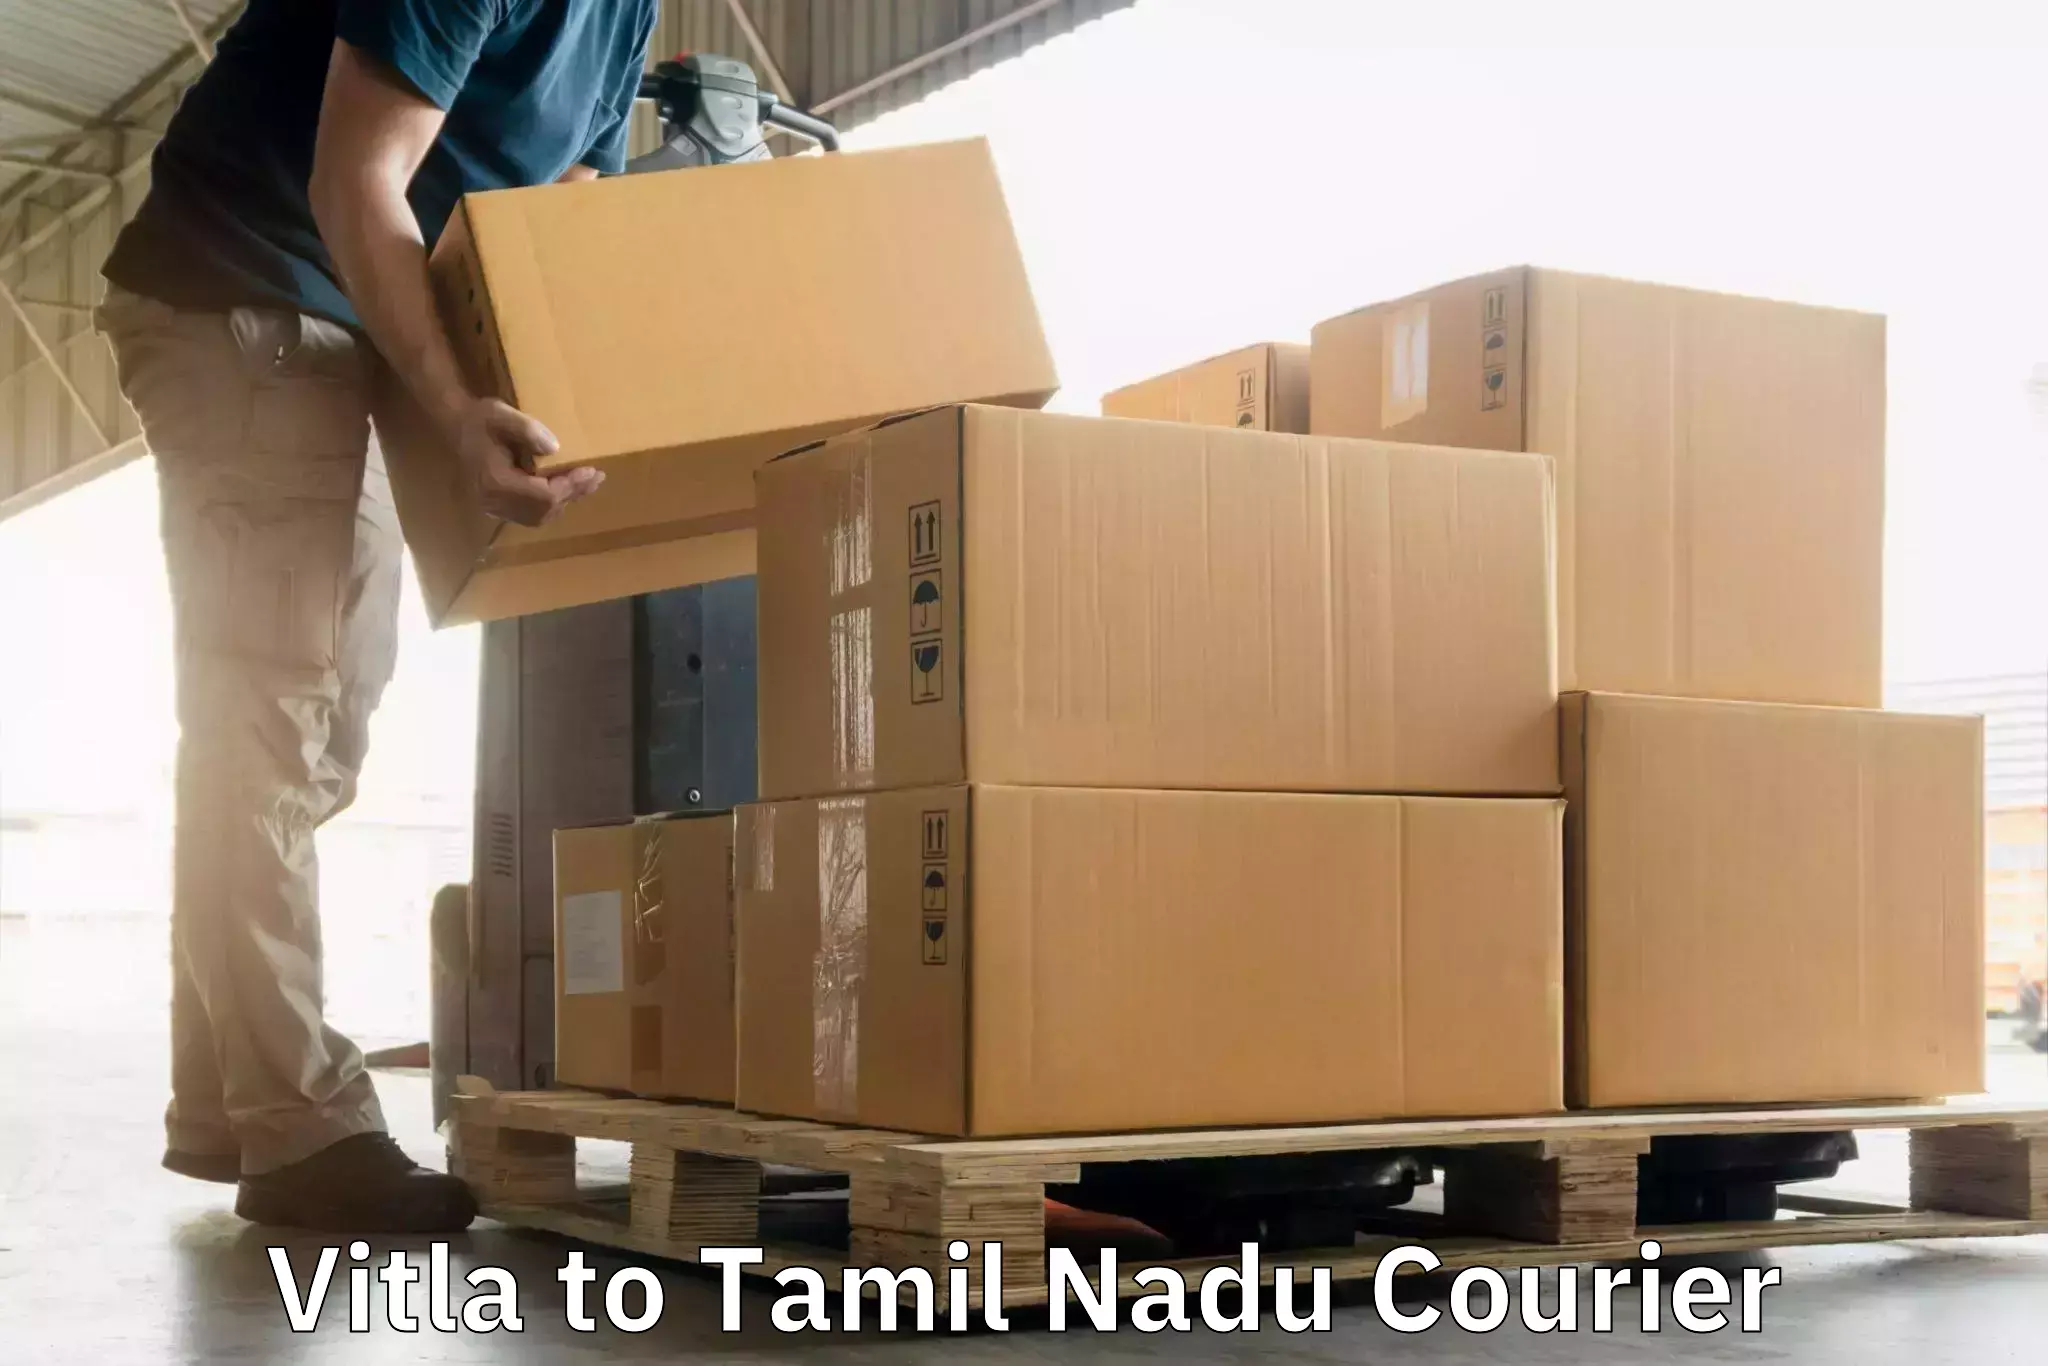 Holiday shipping services Vitla to Rajapalayam